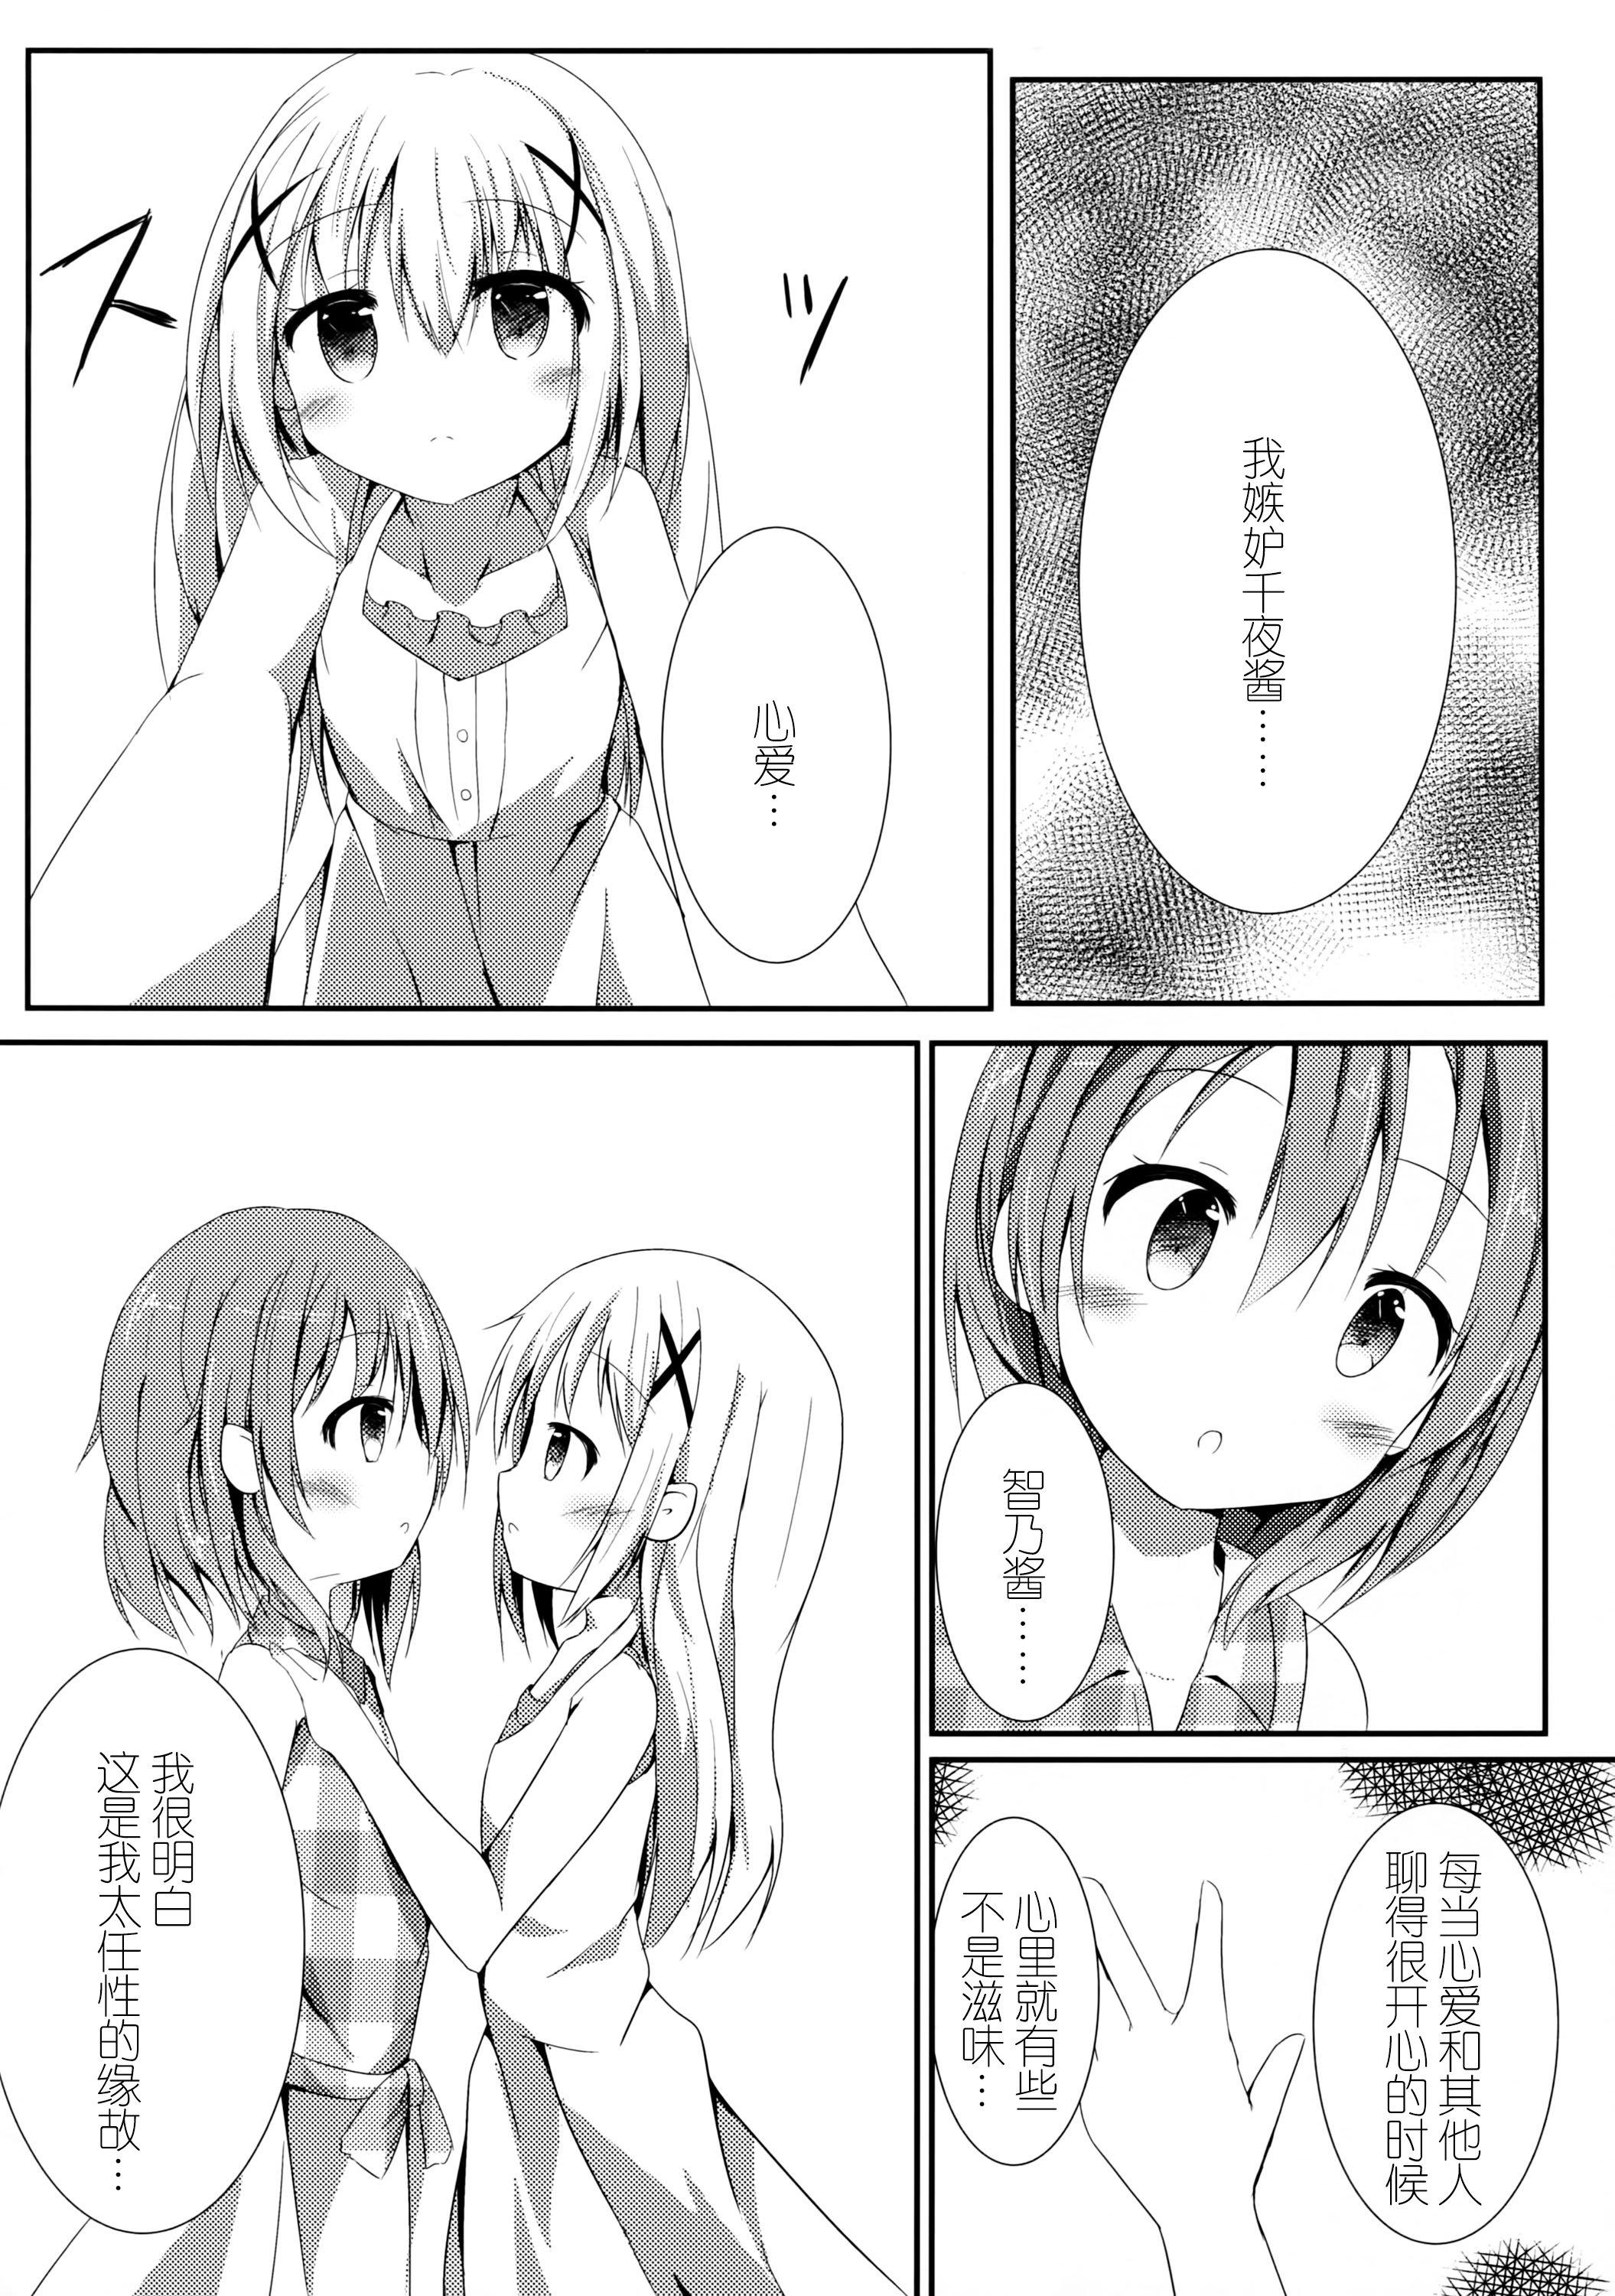 Sexo Sister or Not Sister?? - Gochuumon wa usagi desu ka Face - Page 6